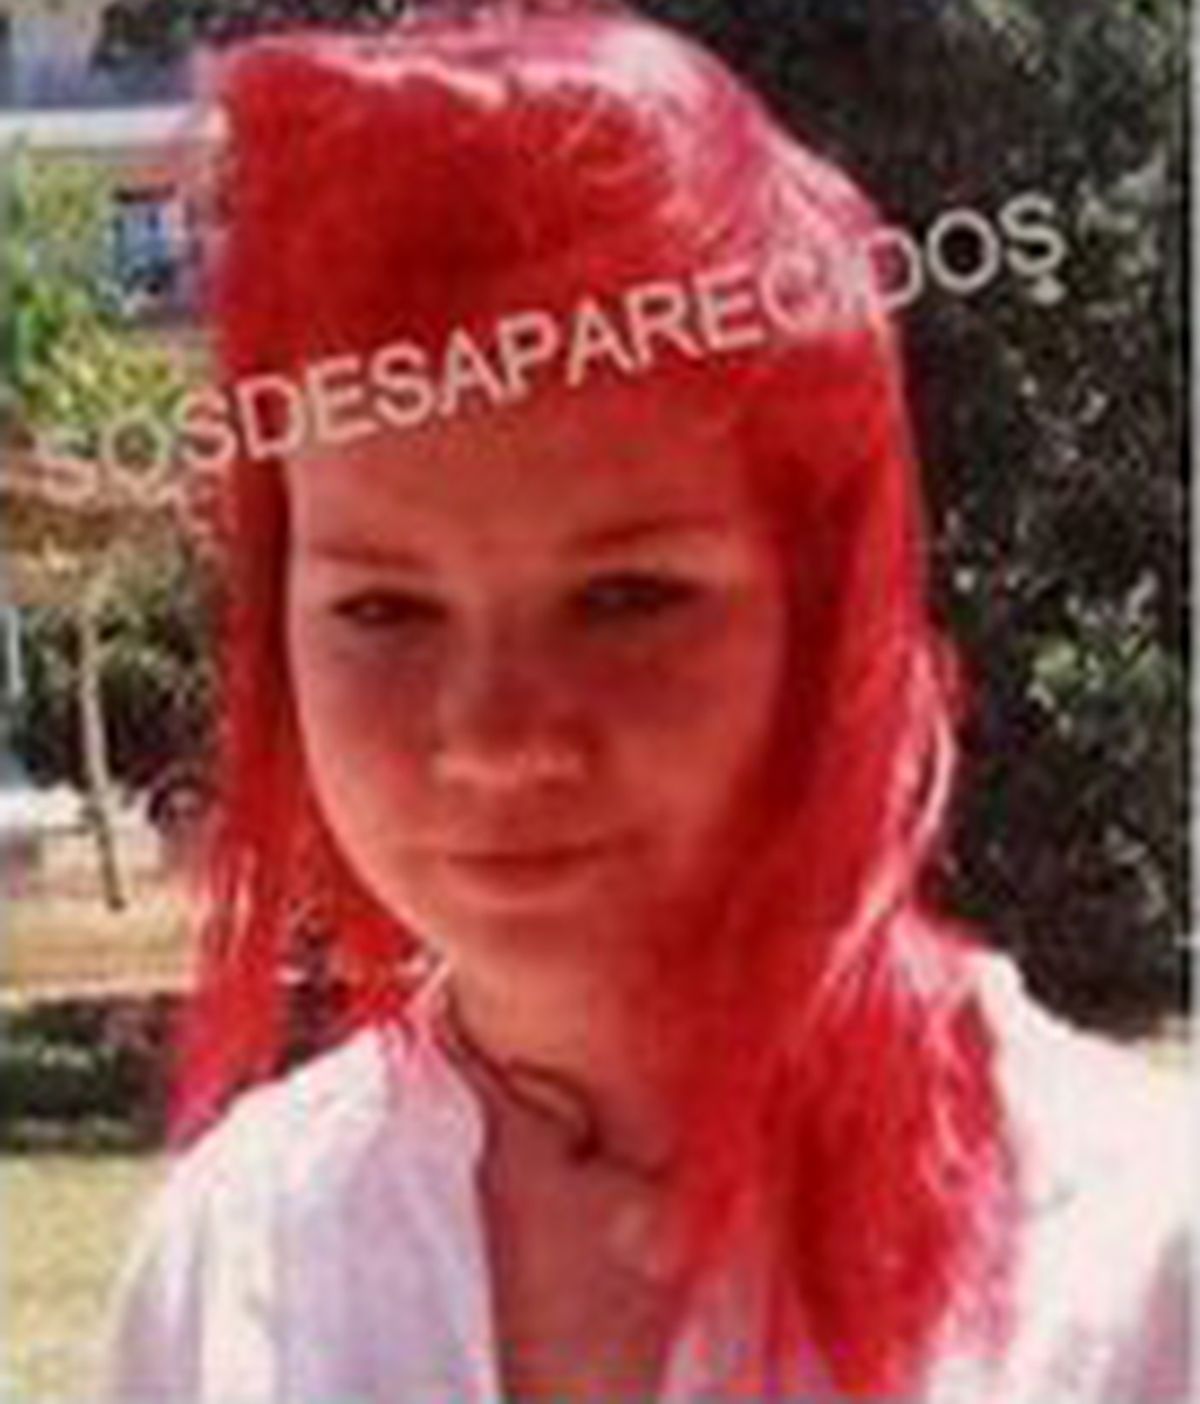 Kristina, la joven de 15 años desaparecida en Roquetas, Almería